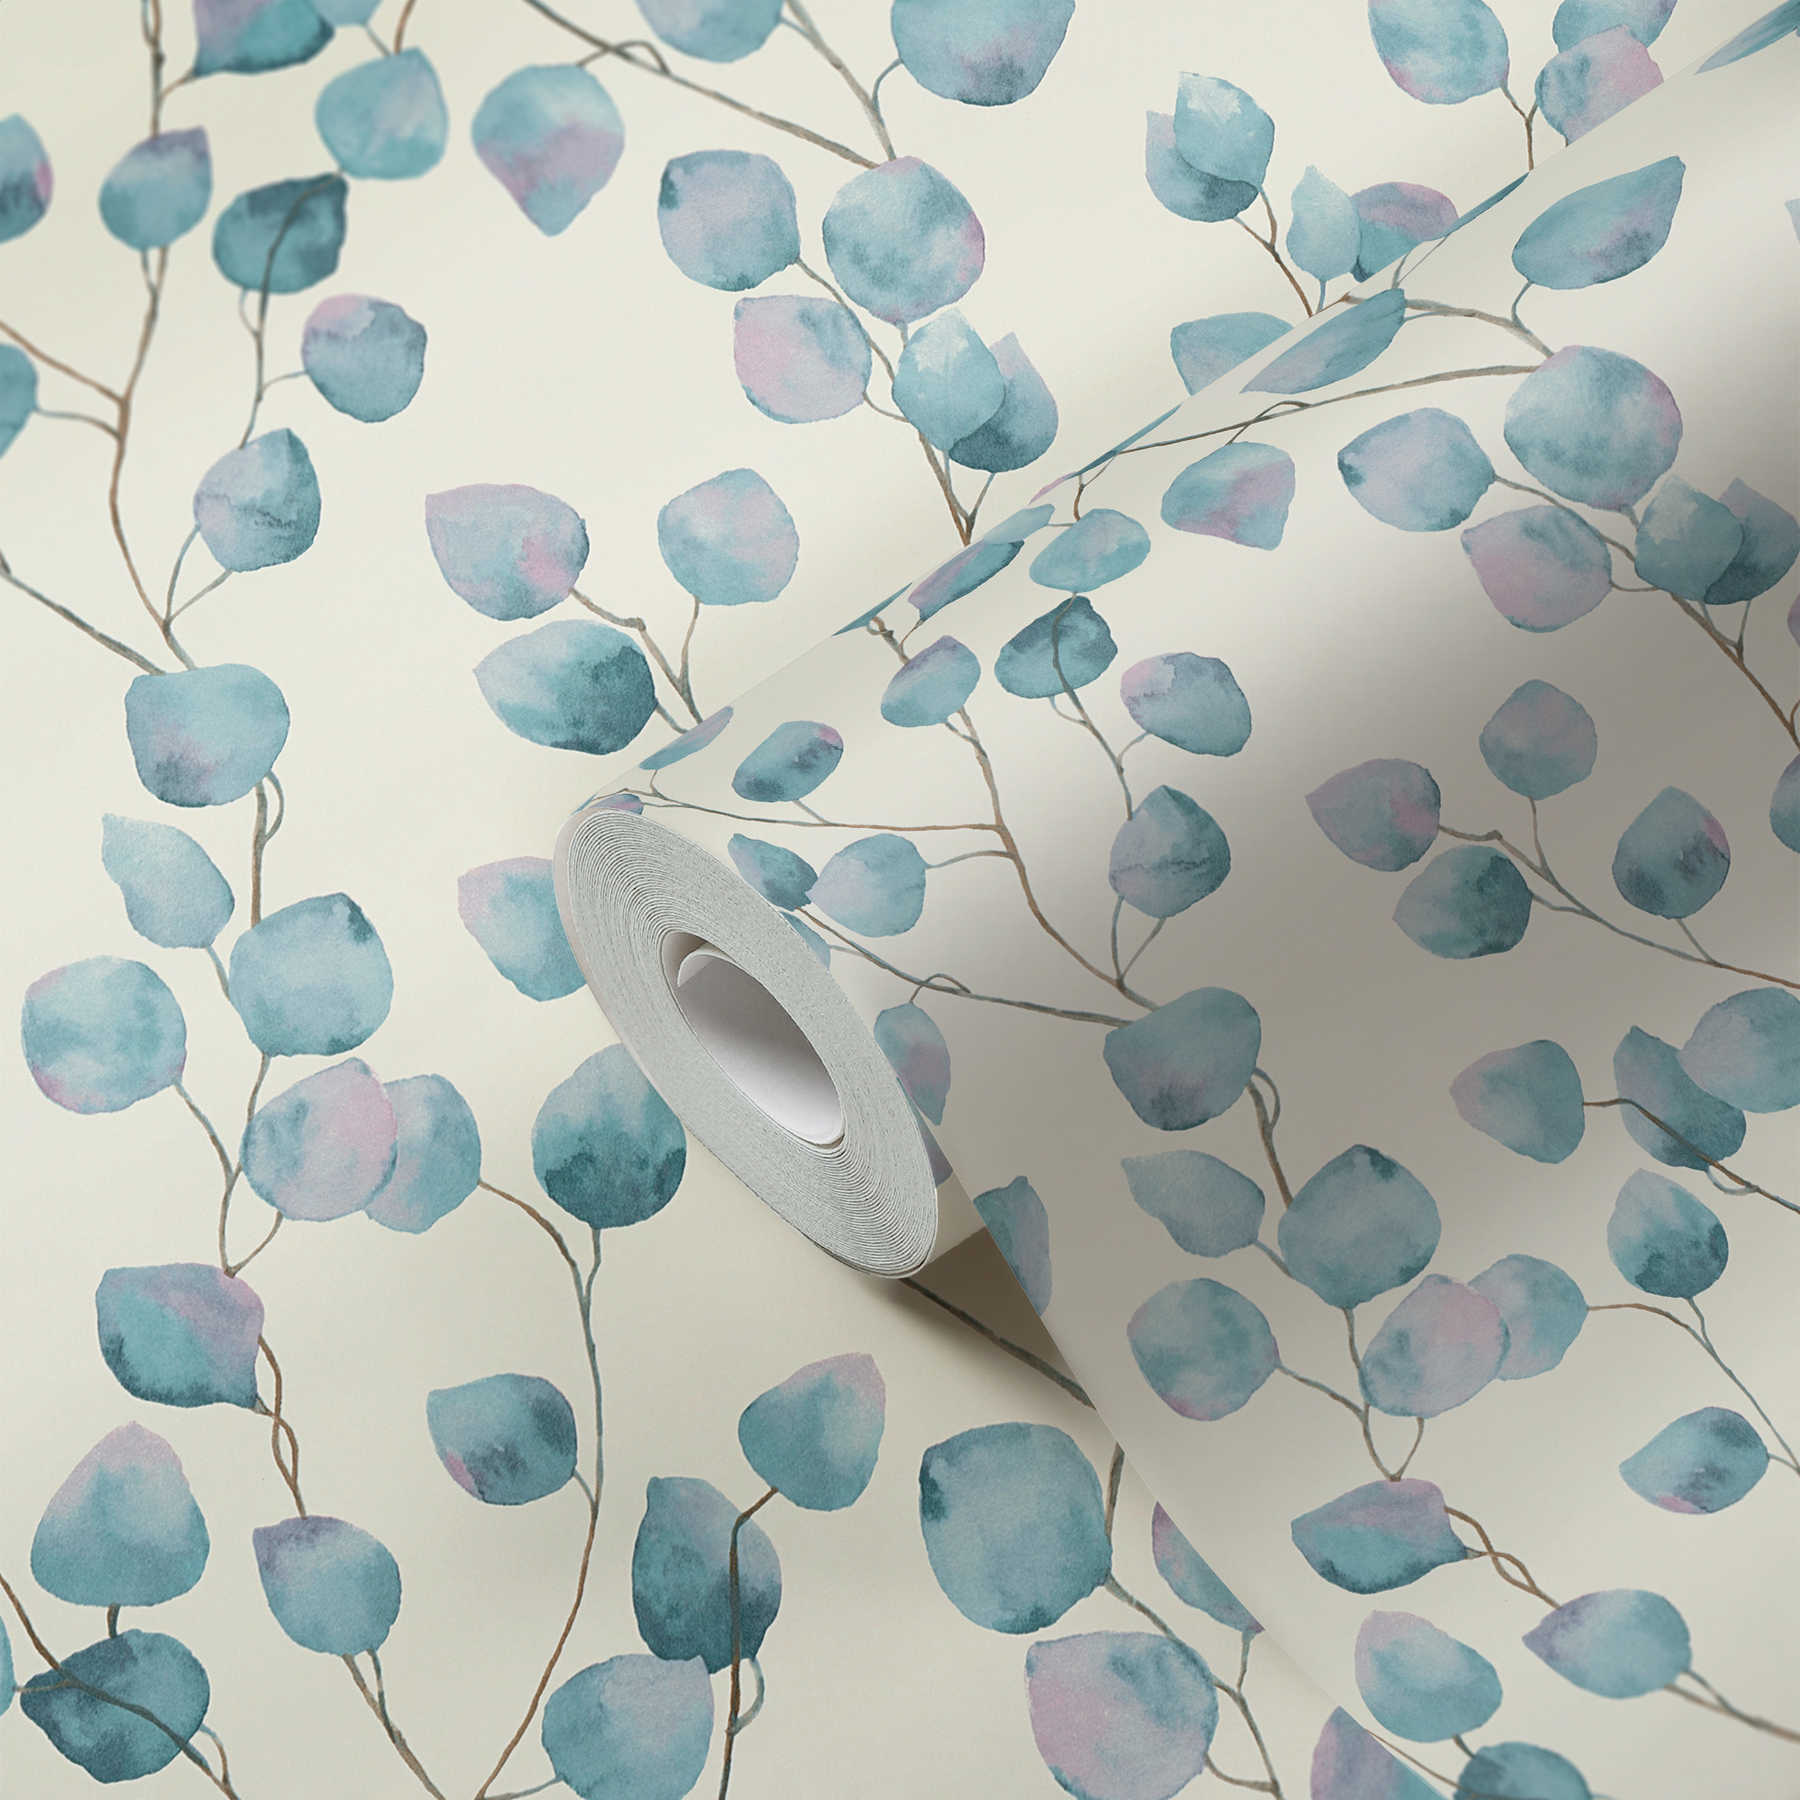             Carta da parati in tessuto non tessuto a forma di viticci di foglie in stile acquerello - blu, bianco
        